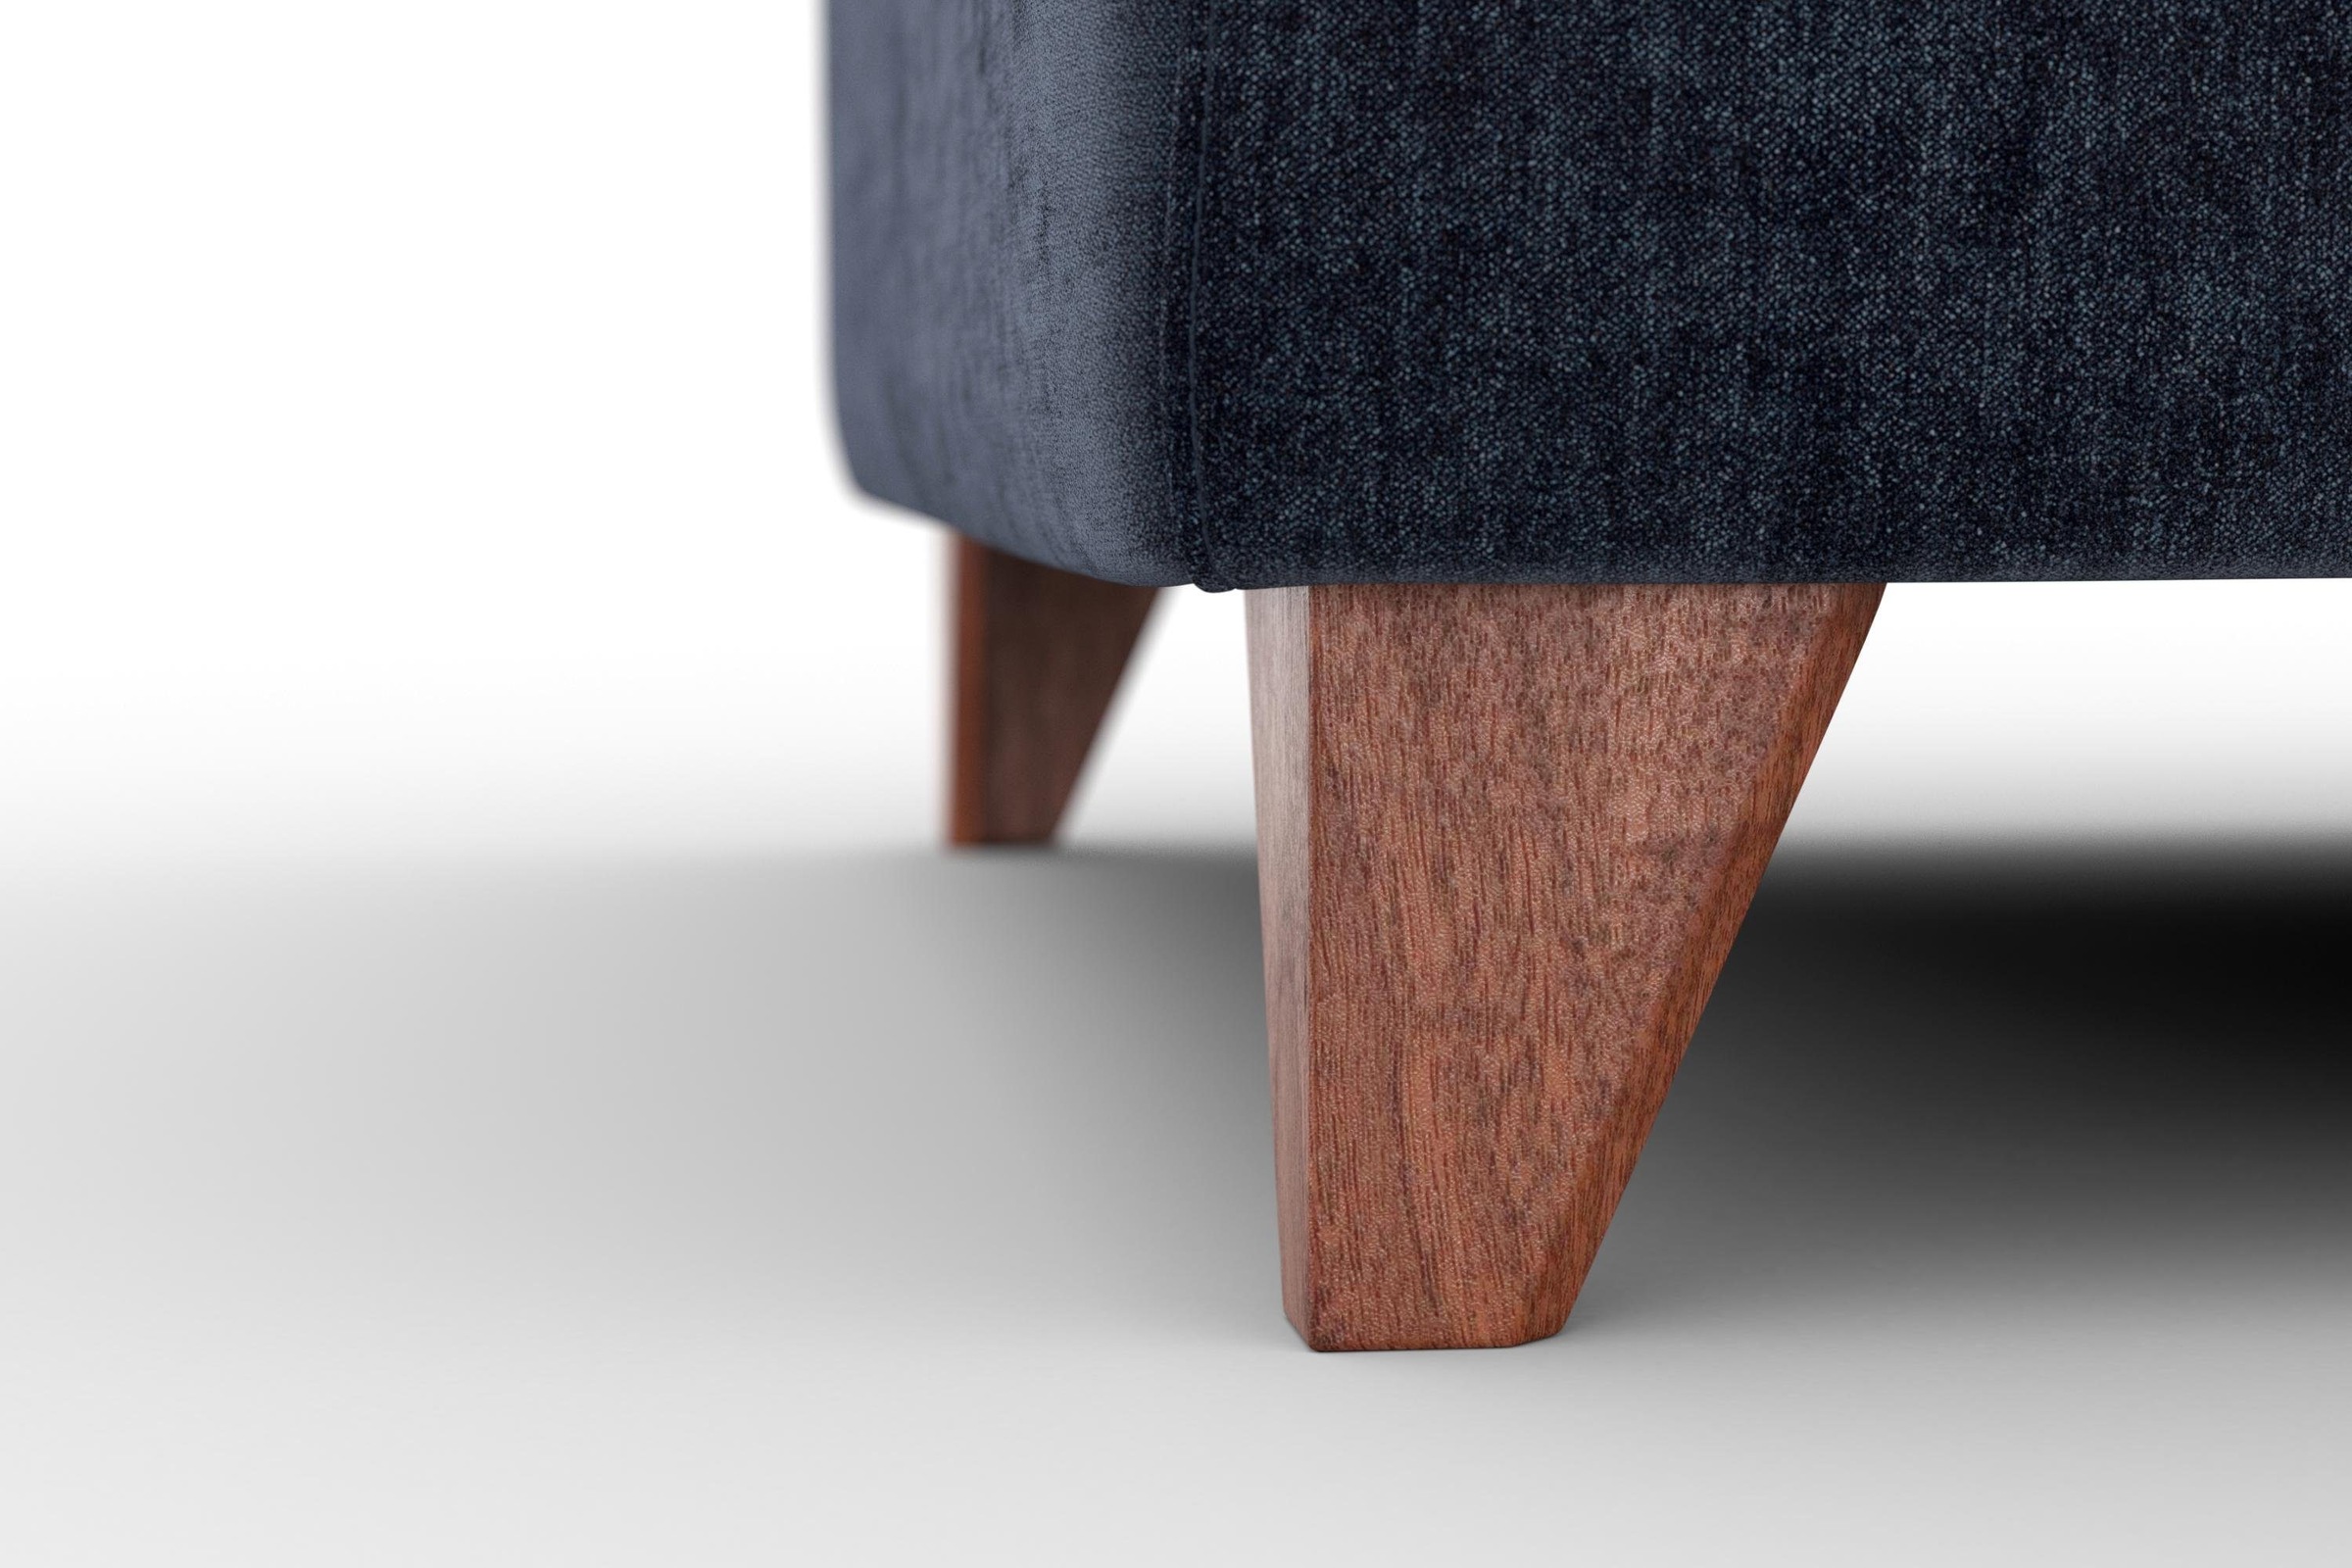 machalke® 3-Sitzer »diego«, mit weichen Armlehnen, Füße wengefarben, Breite 225 cm